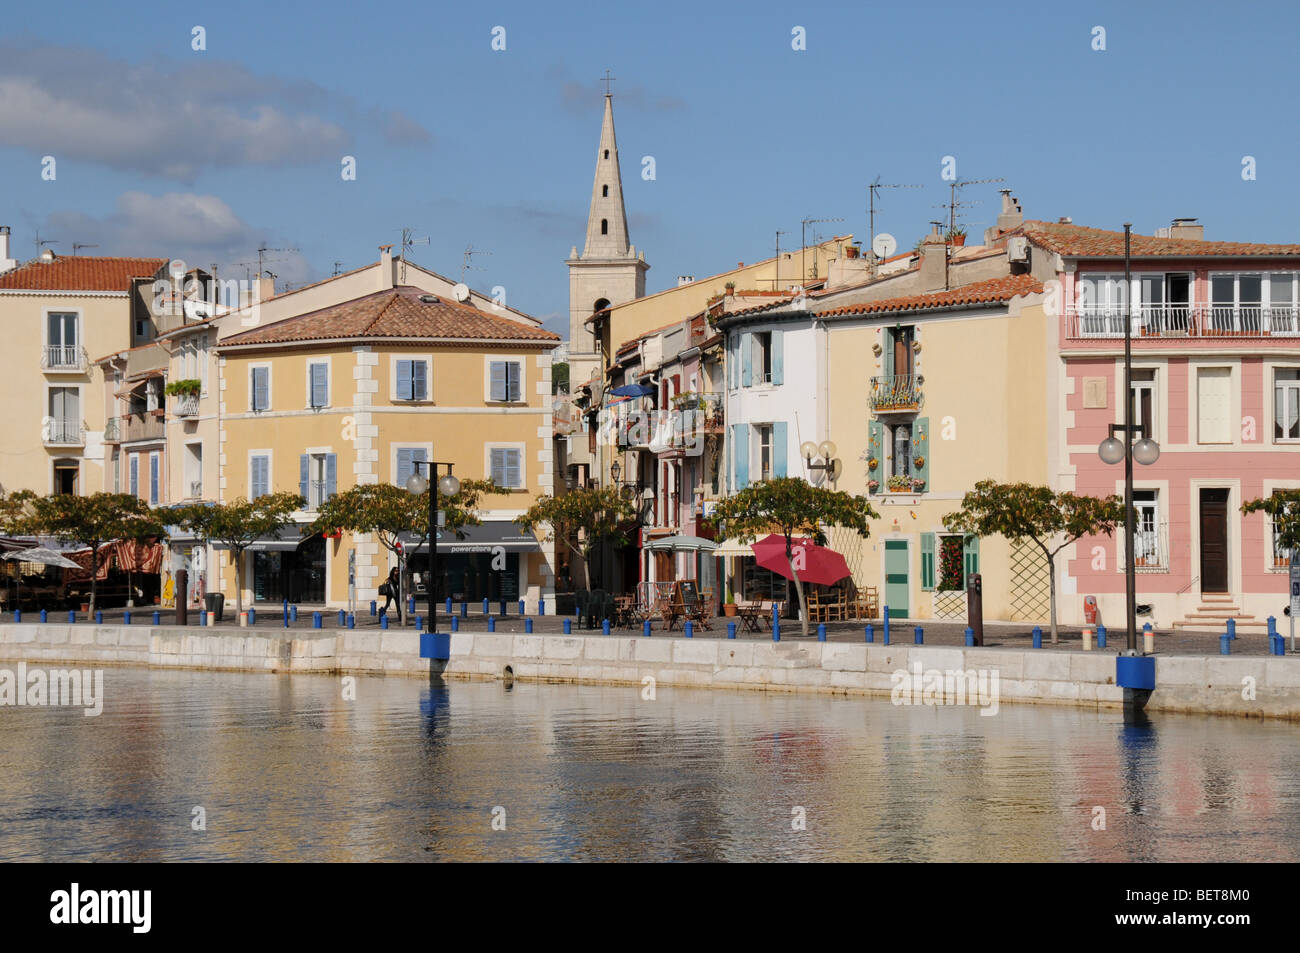 Am Kai und Hafen "Klein Venedig" la Venise Provençale, in der Nähe von Martigues im Süden von Frankreich. Stockfoto